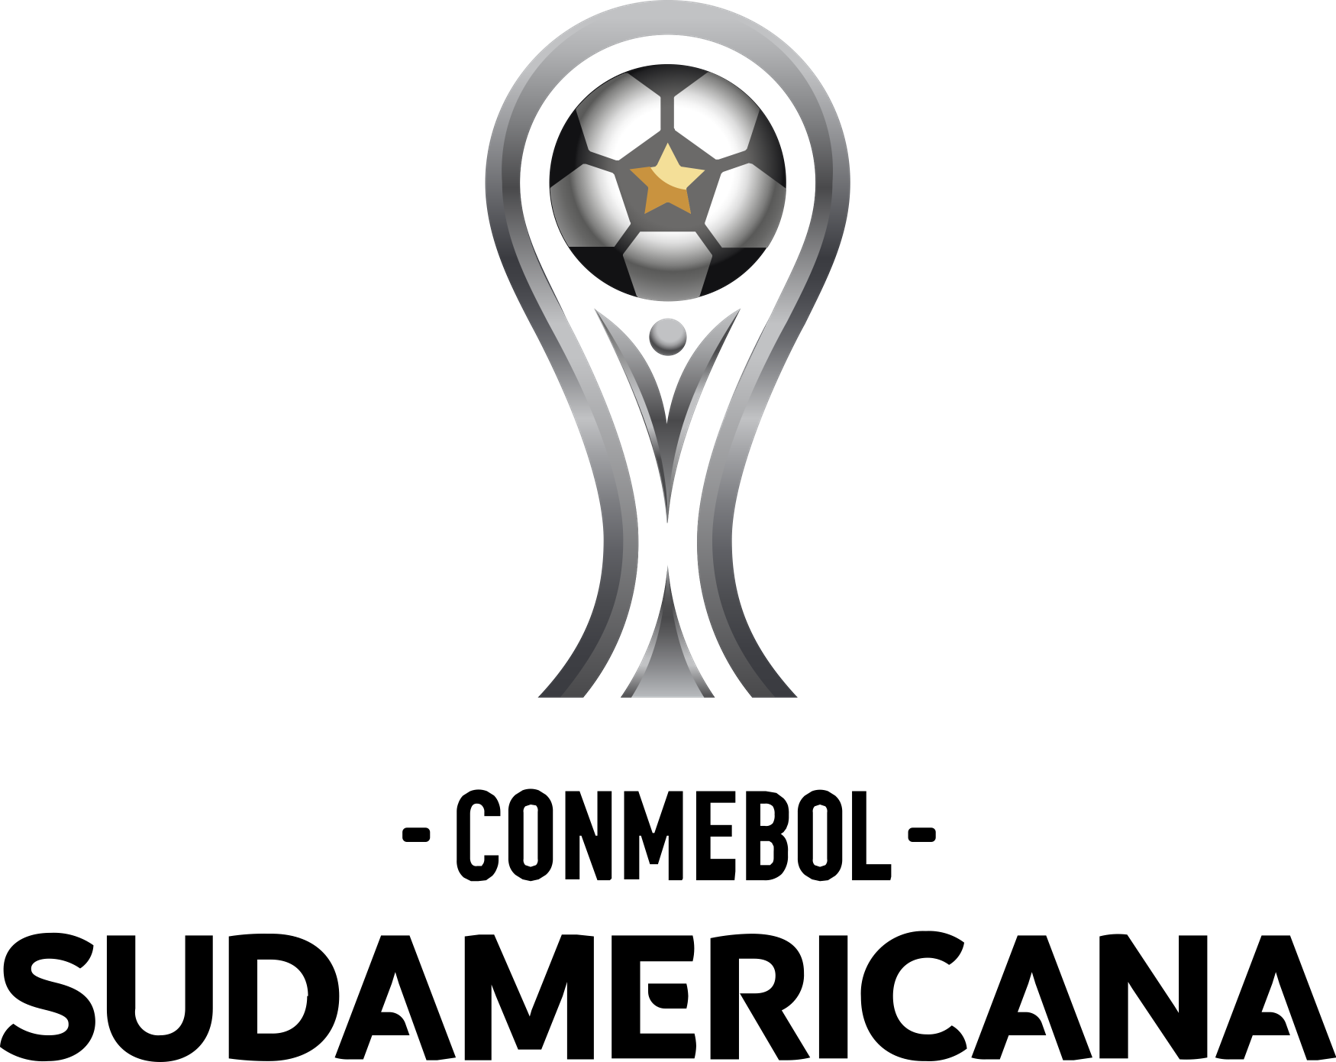 Copa Europeia/Sul-Americana de 1983 – Wikipédia, a enciclopédia livre